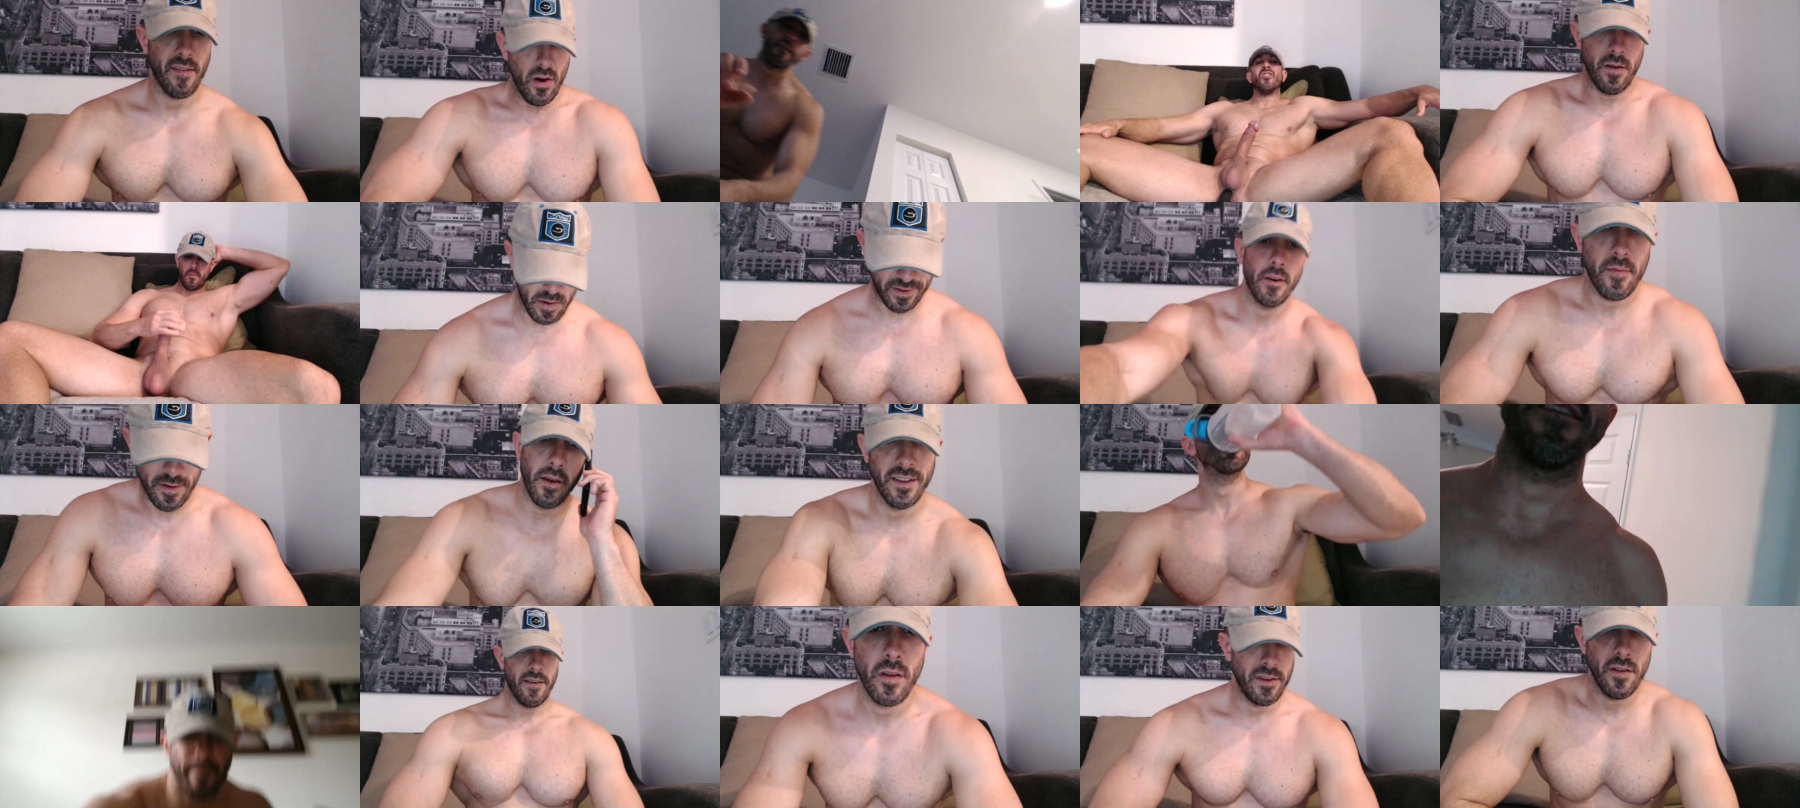 Nerdmuscles2x  23-10-2021 Male Webcam